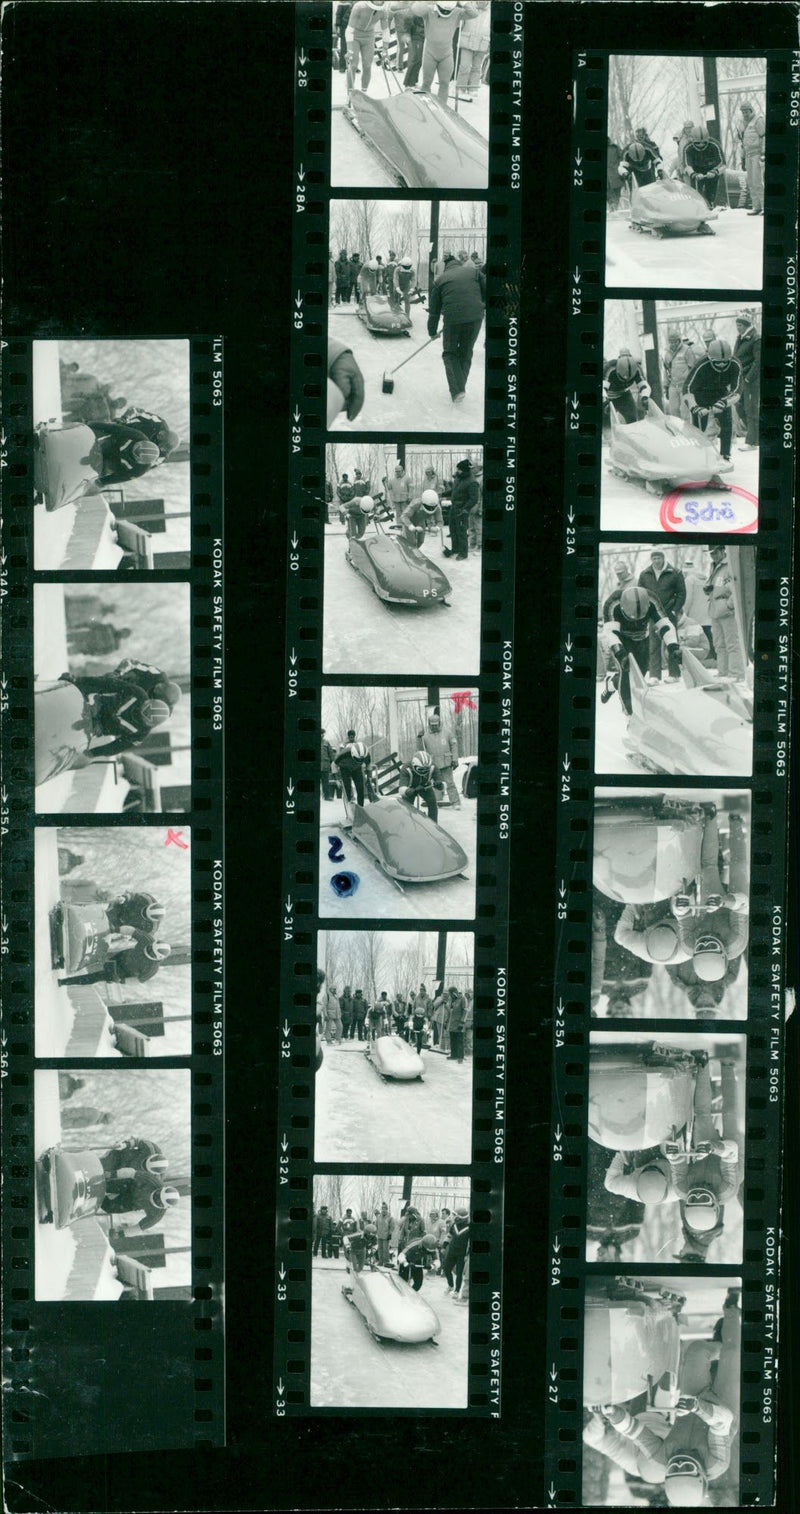 AWARDWINNING FILM SHOT LAKE PLACID NEW YORK - Vintage Photograph